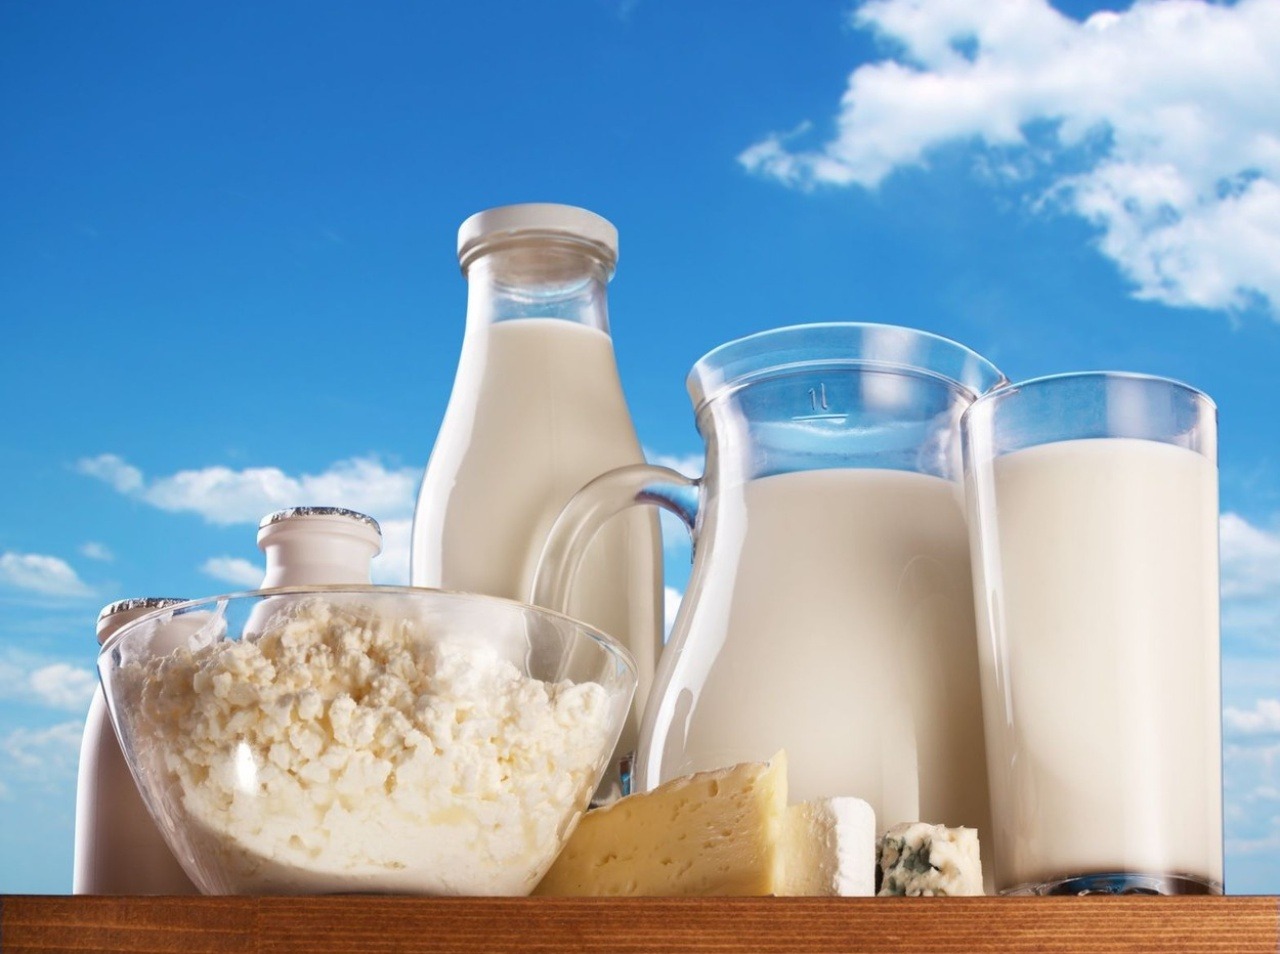 Mlieko, jogurt ako aj ďalšie mliečne výrobky, obsahujú laktózu, ktorá nie je ničím iným ako čisto prírodným zložitým cukrom.